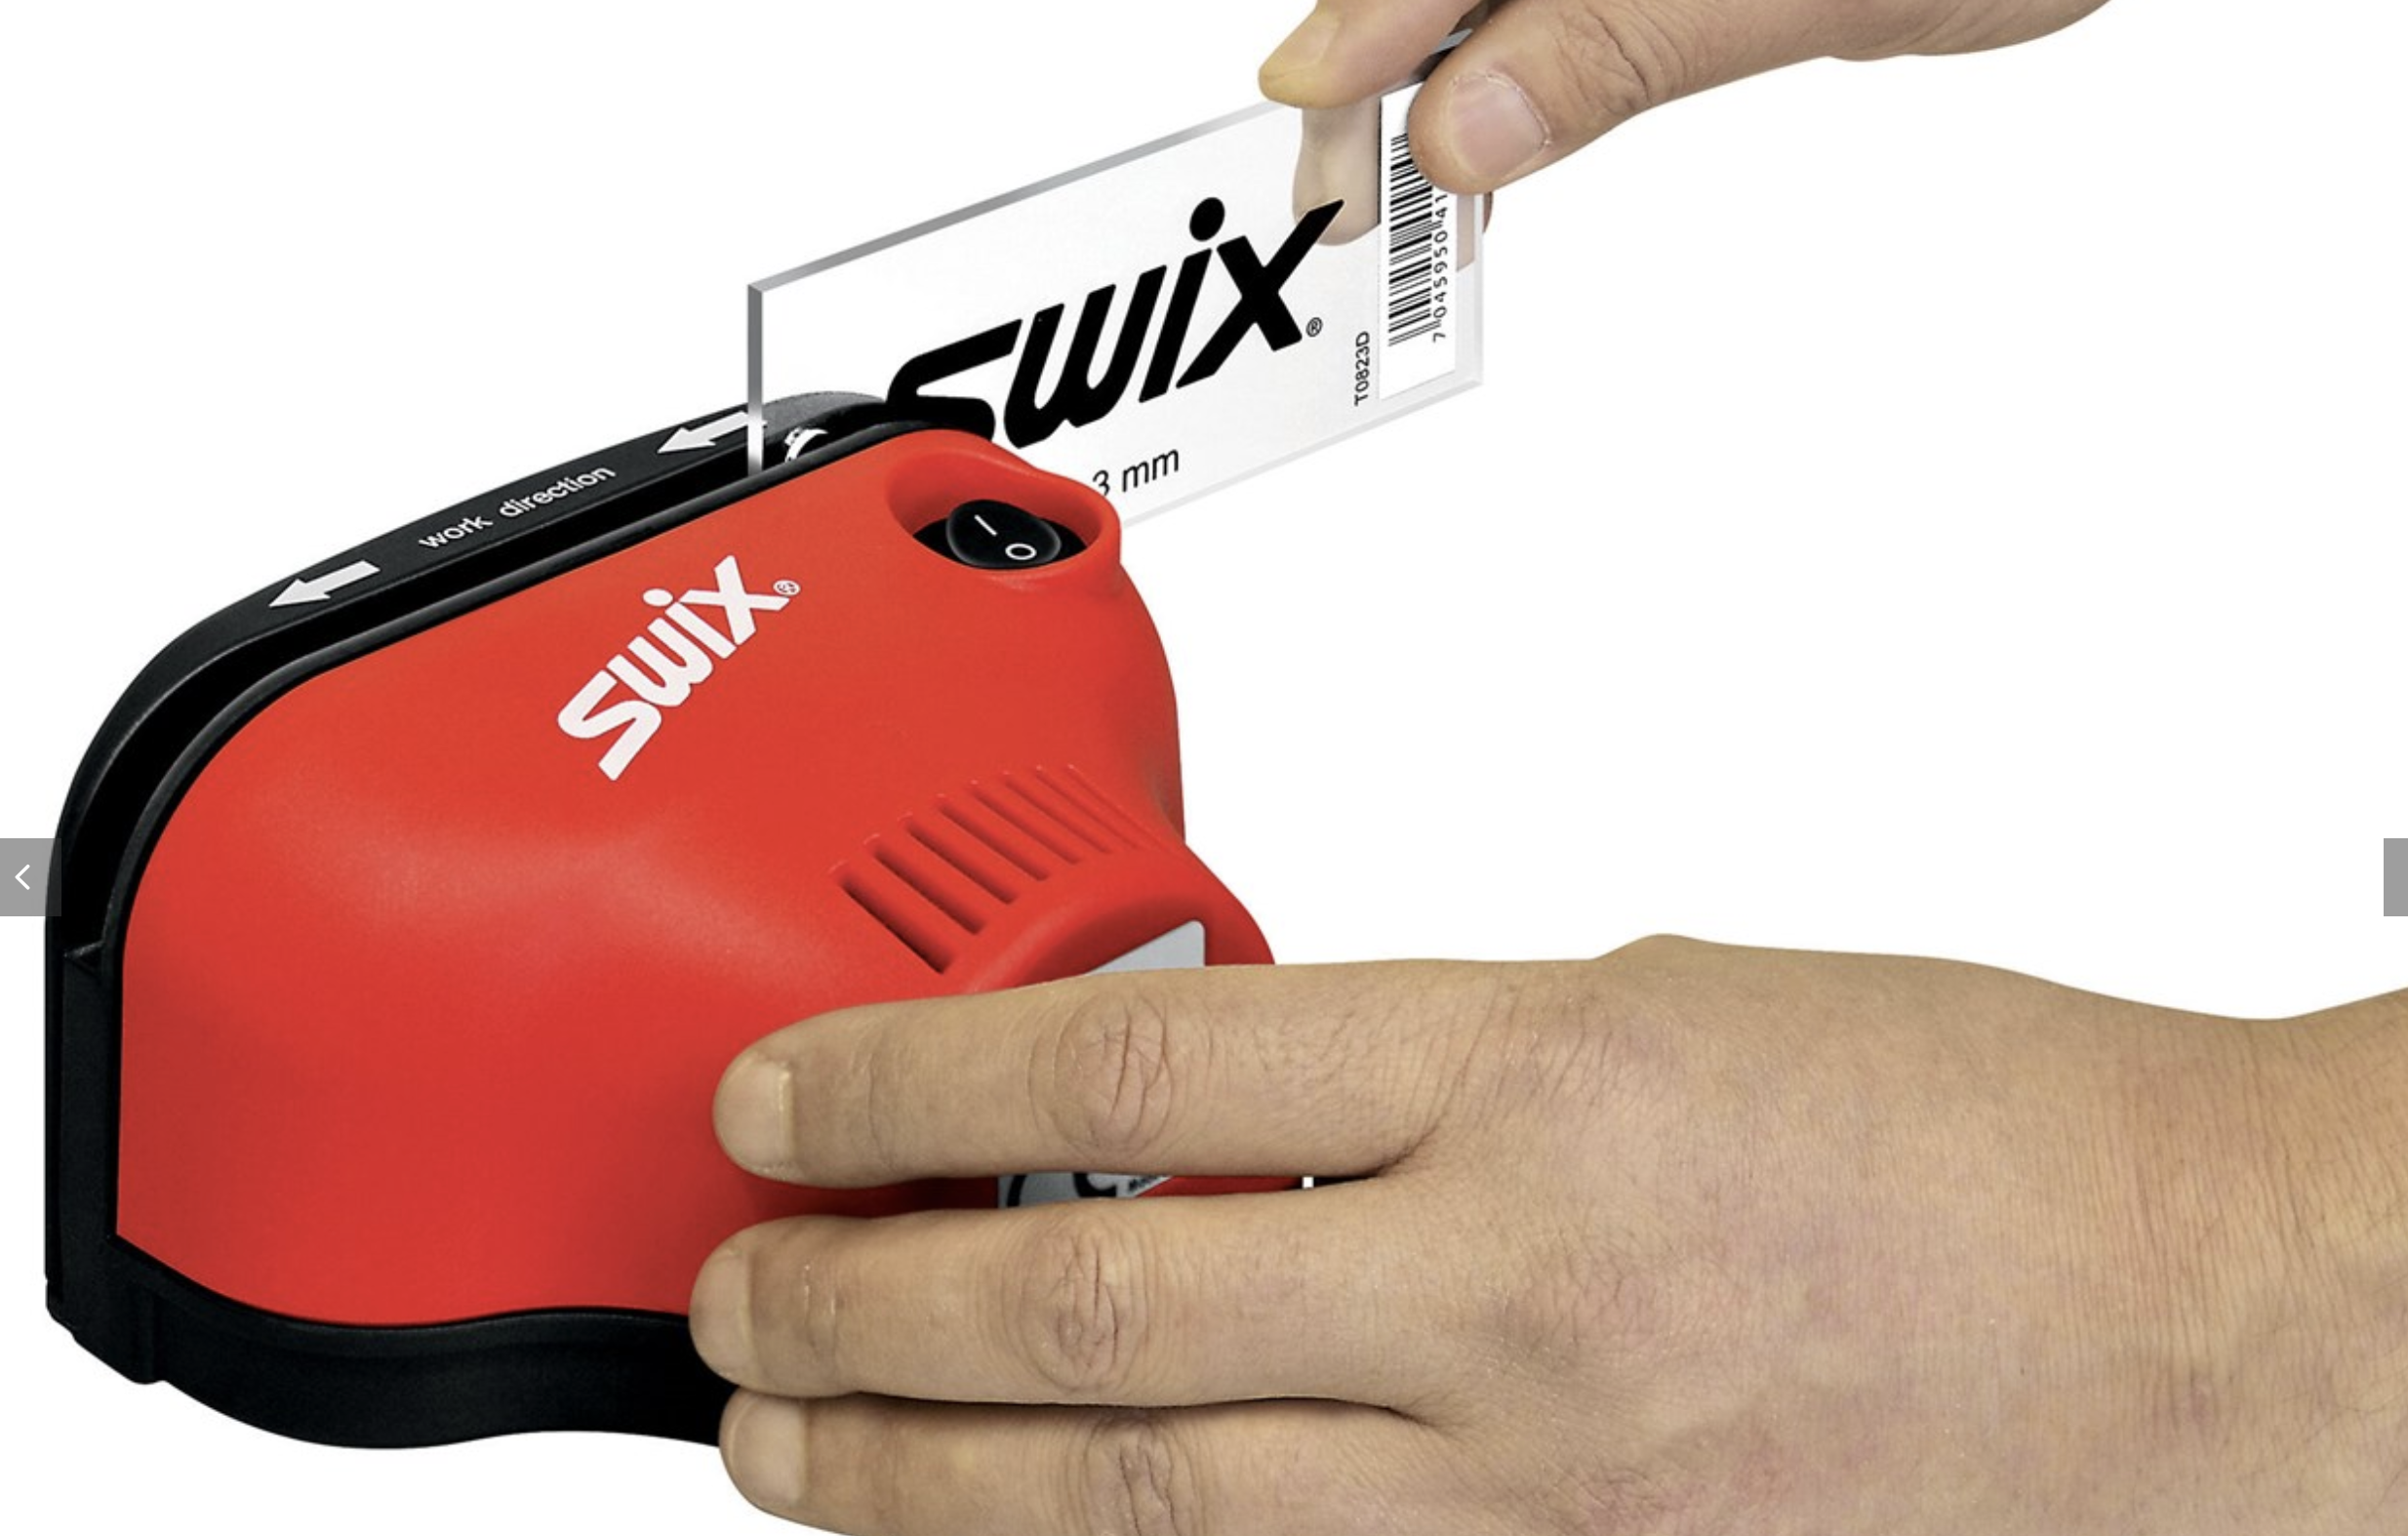 SWIX affila spatole elettrico <del>€ 199,00</del>